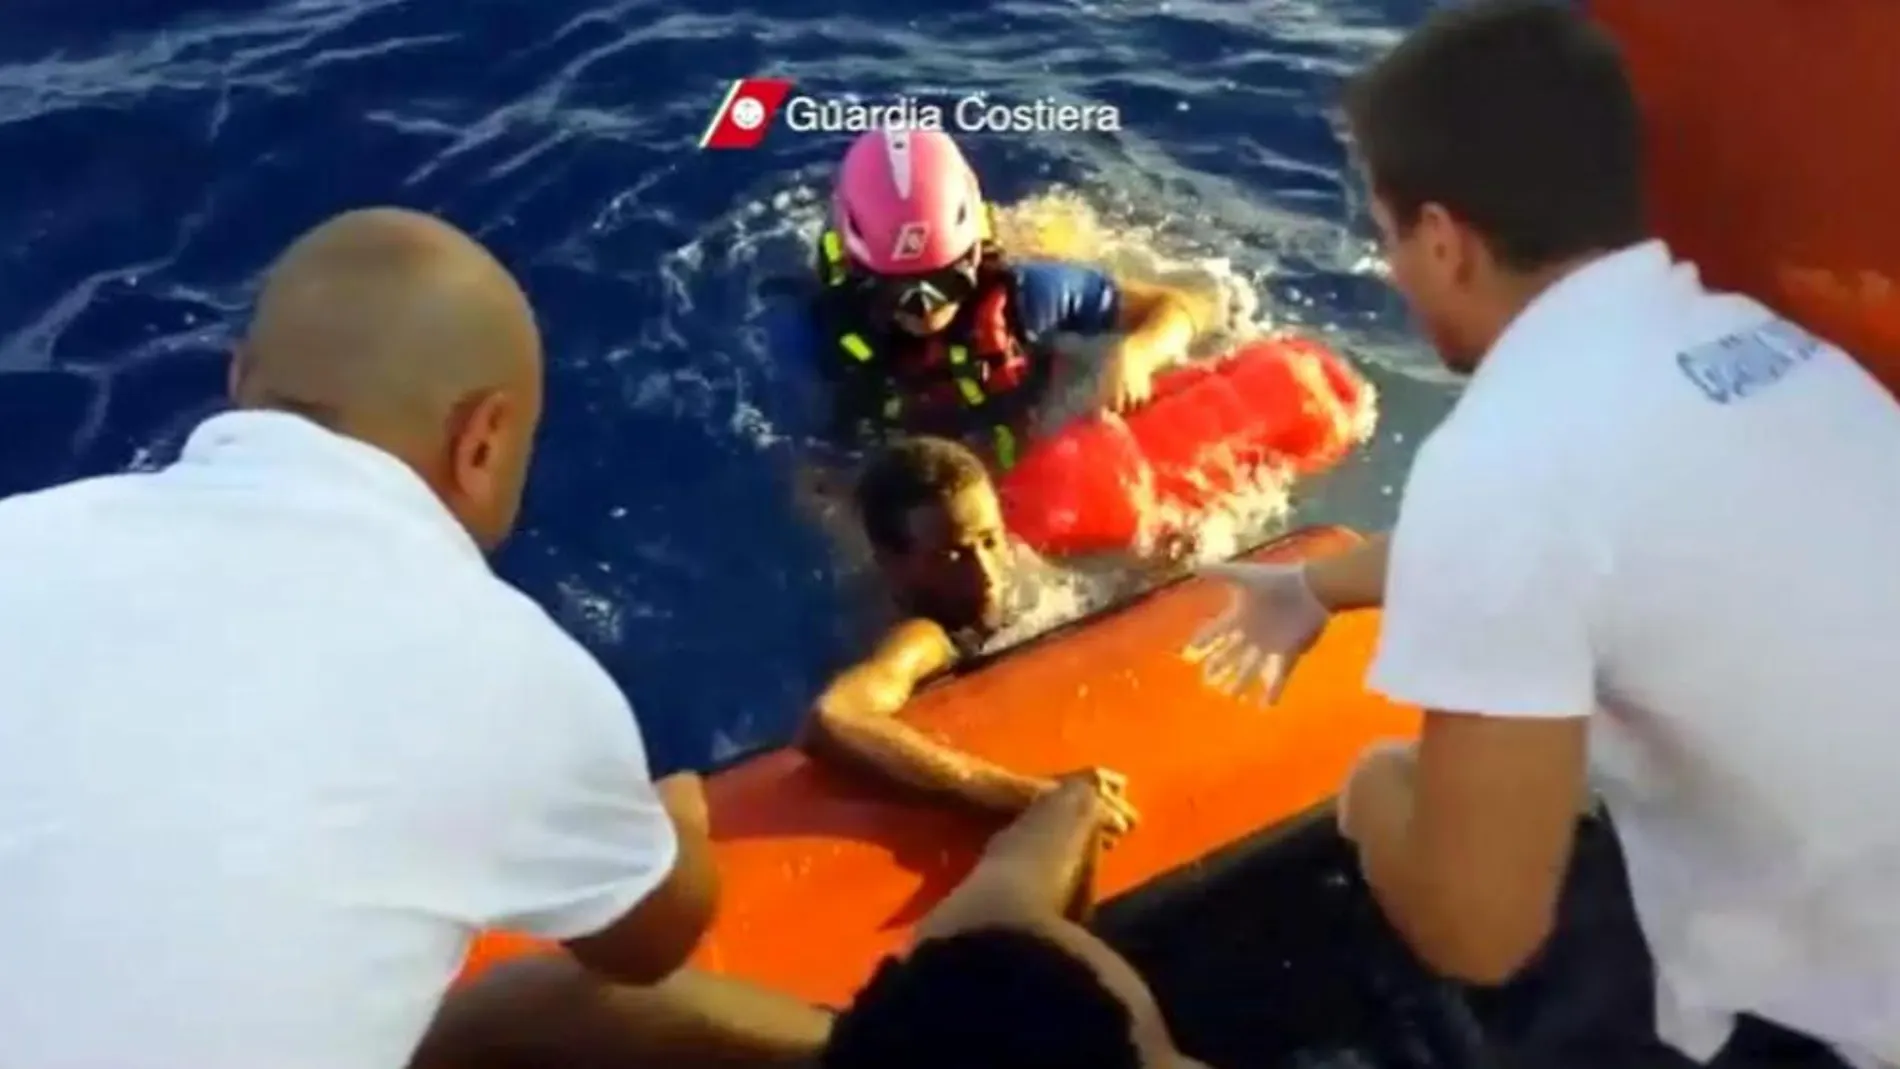 Fotografía facilitada hoy, viernes 4 de octubre de 2013, por la Guardia Costera italiana que muestra el rescate de algunos inmigrantes en la costa cercana a Lampedusa ayer.